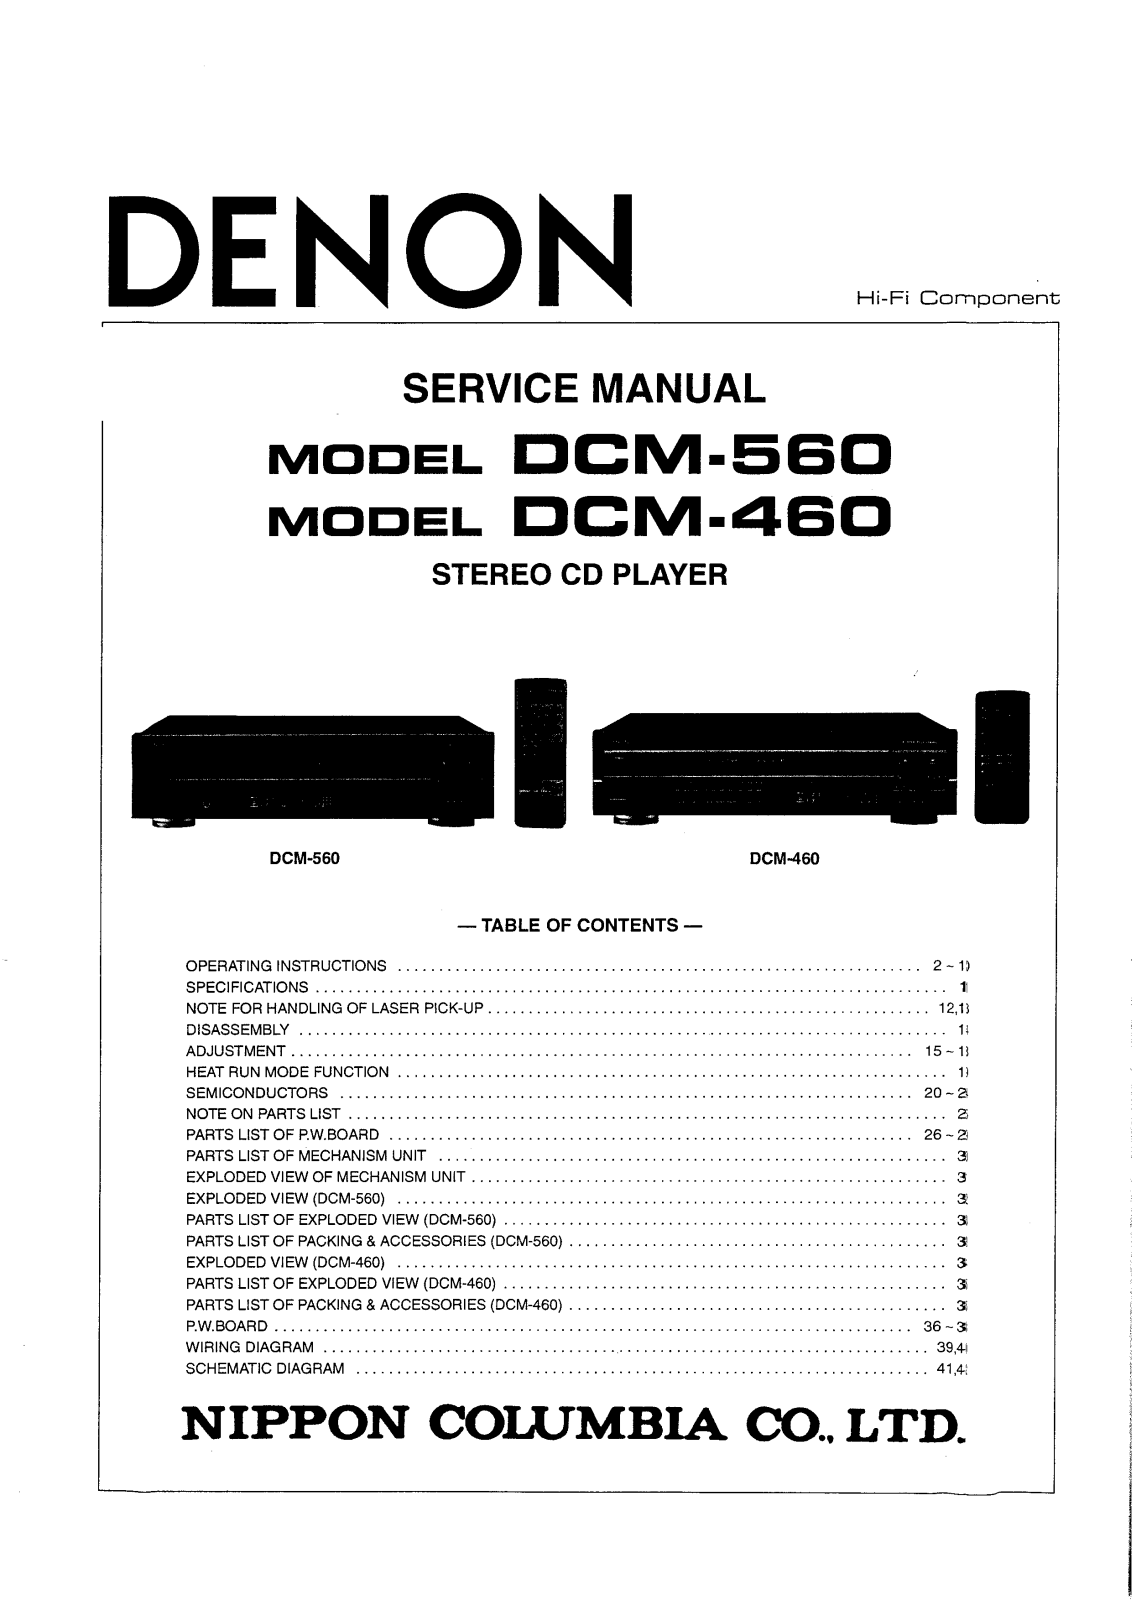 Denon DCM-460, DCD-560 Service Manual